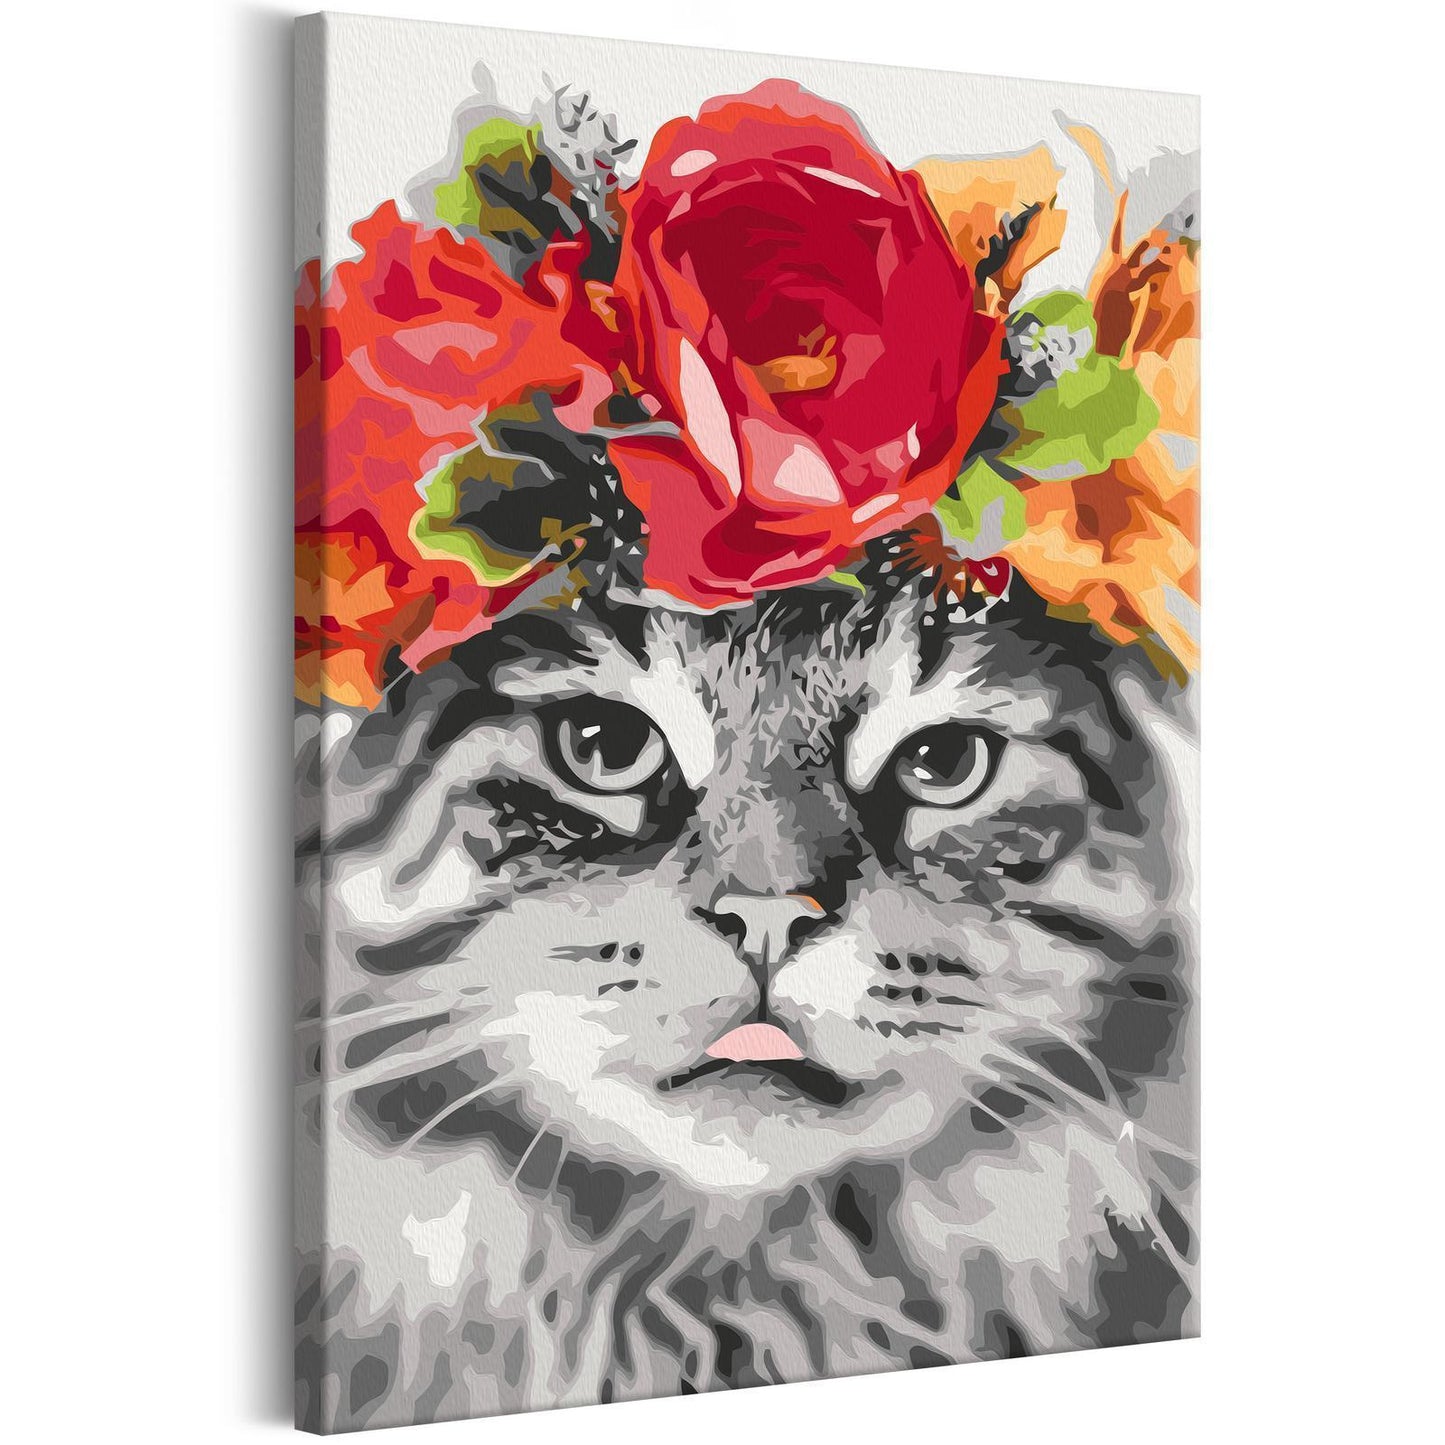 Doe-het-zelf op canvas schilderen - Cat With Flowers